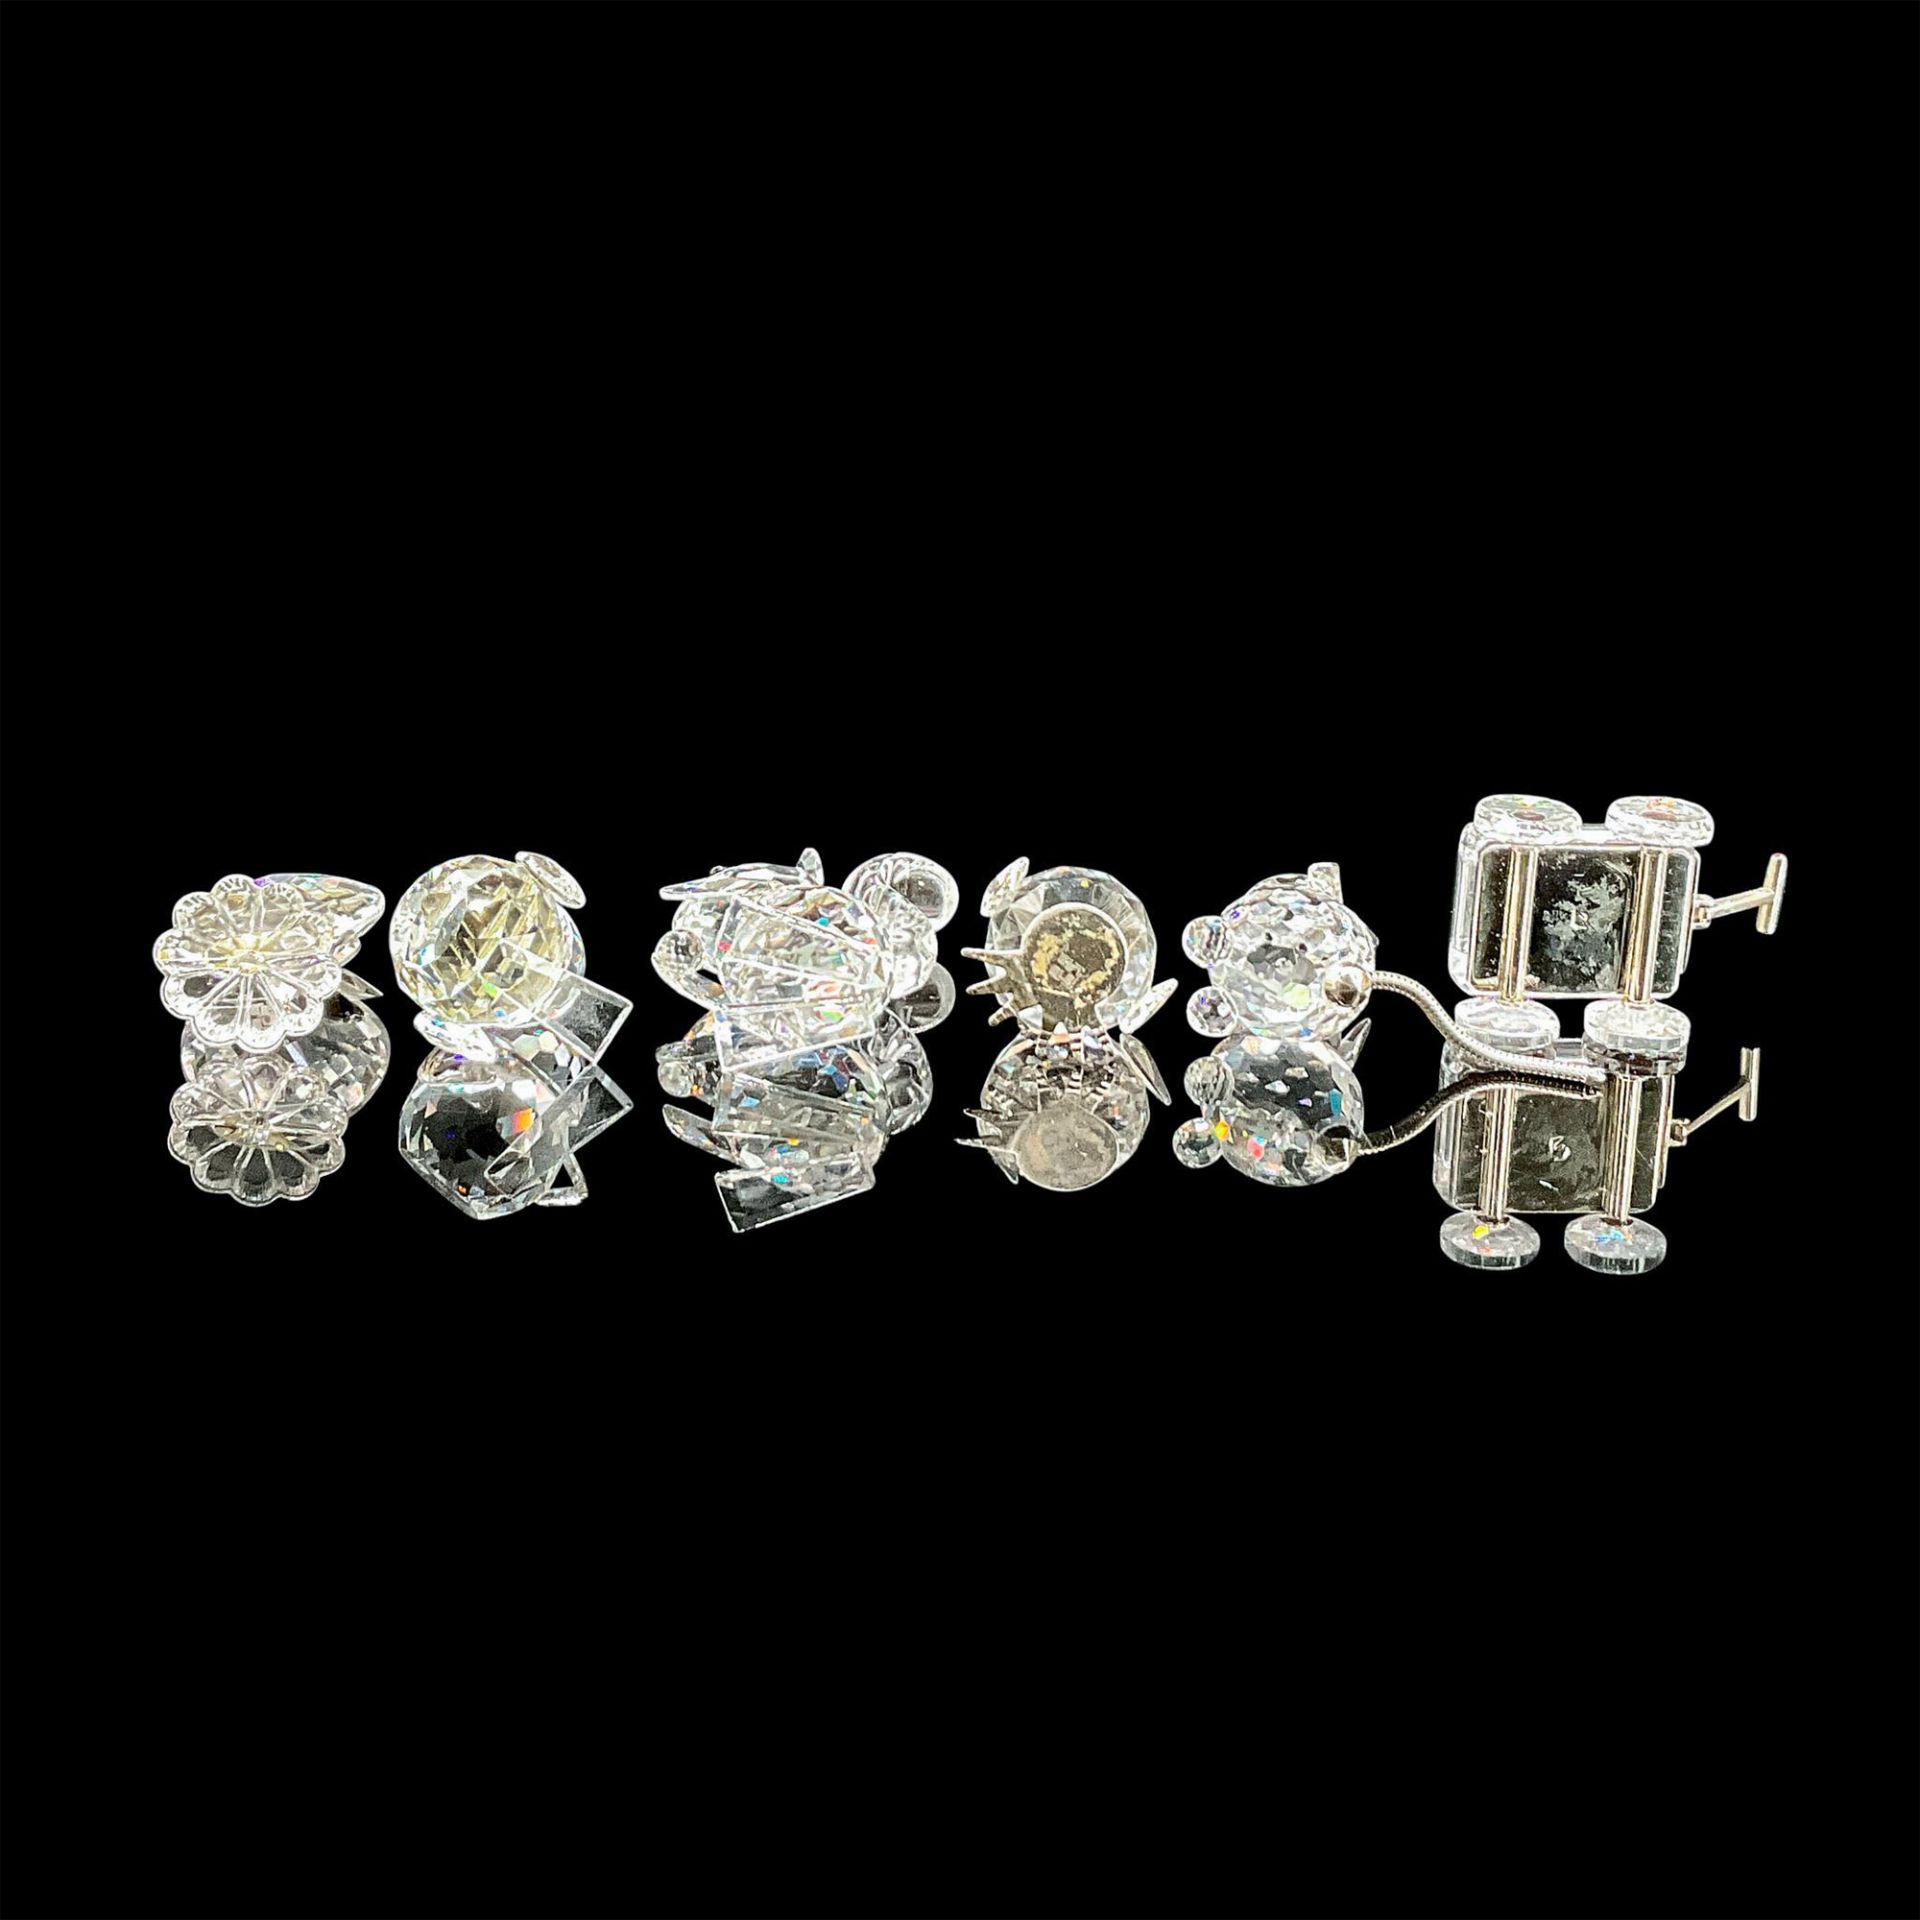 6pc Swarovski Silver Crystal Figurines, Various Animals - Image 3 of 3